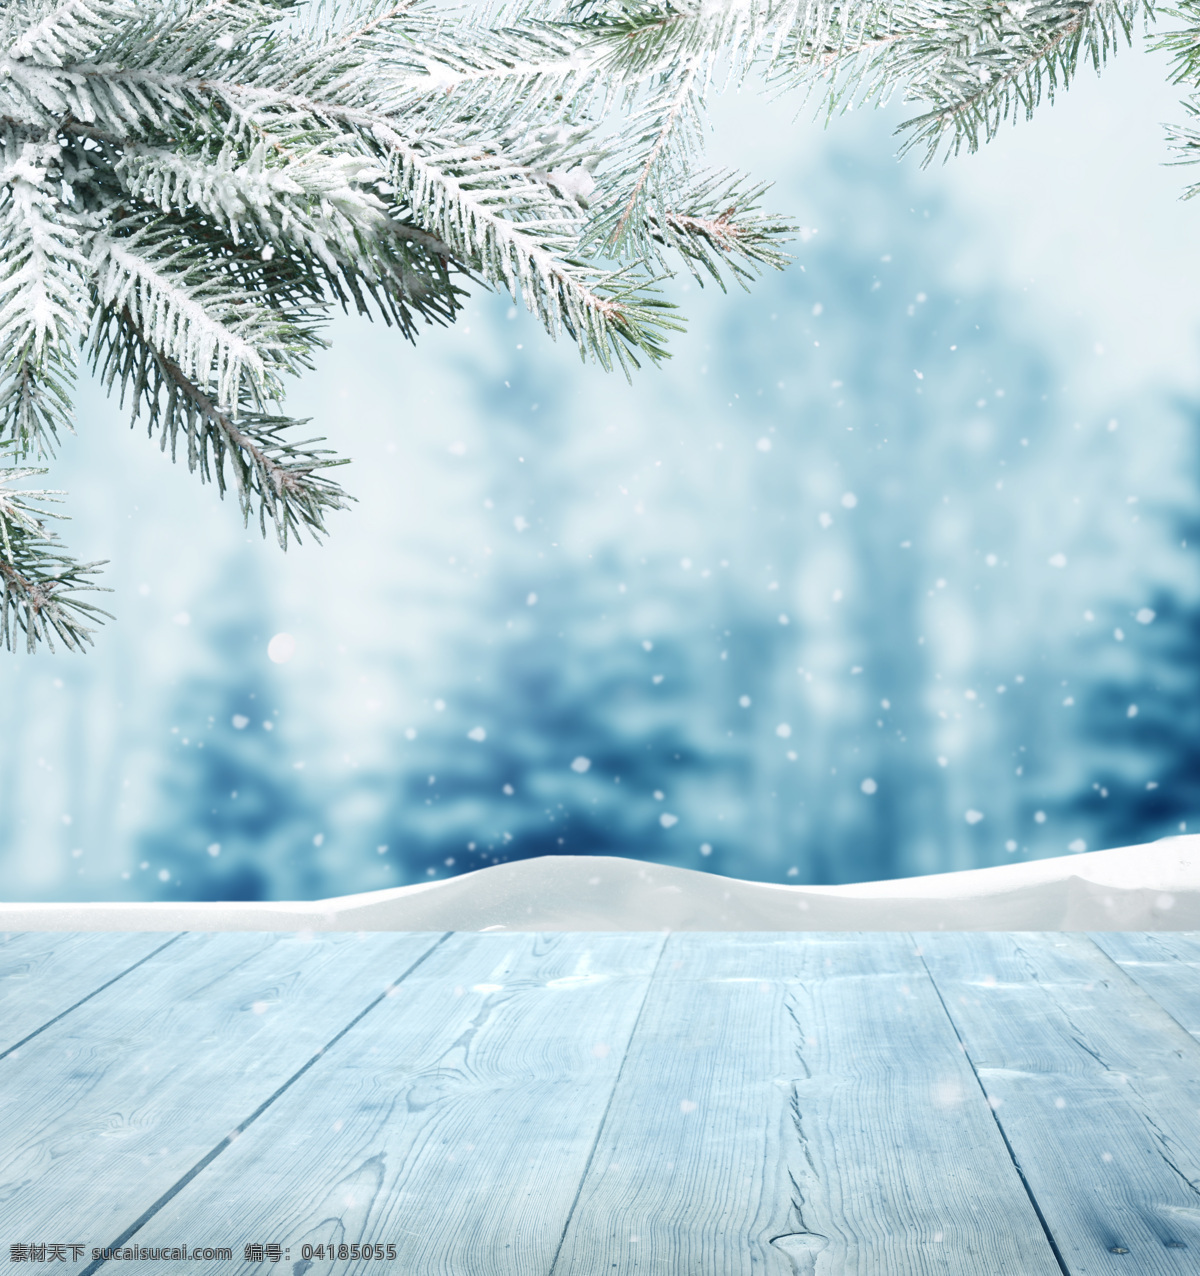 树枝 下 木板 植物 白雪 雪地 雪景 山水风景 风景图片